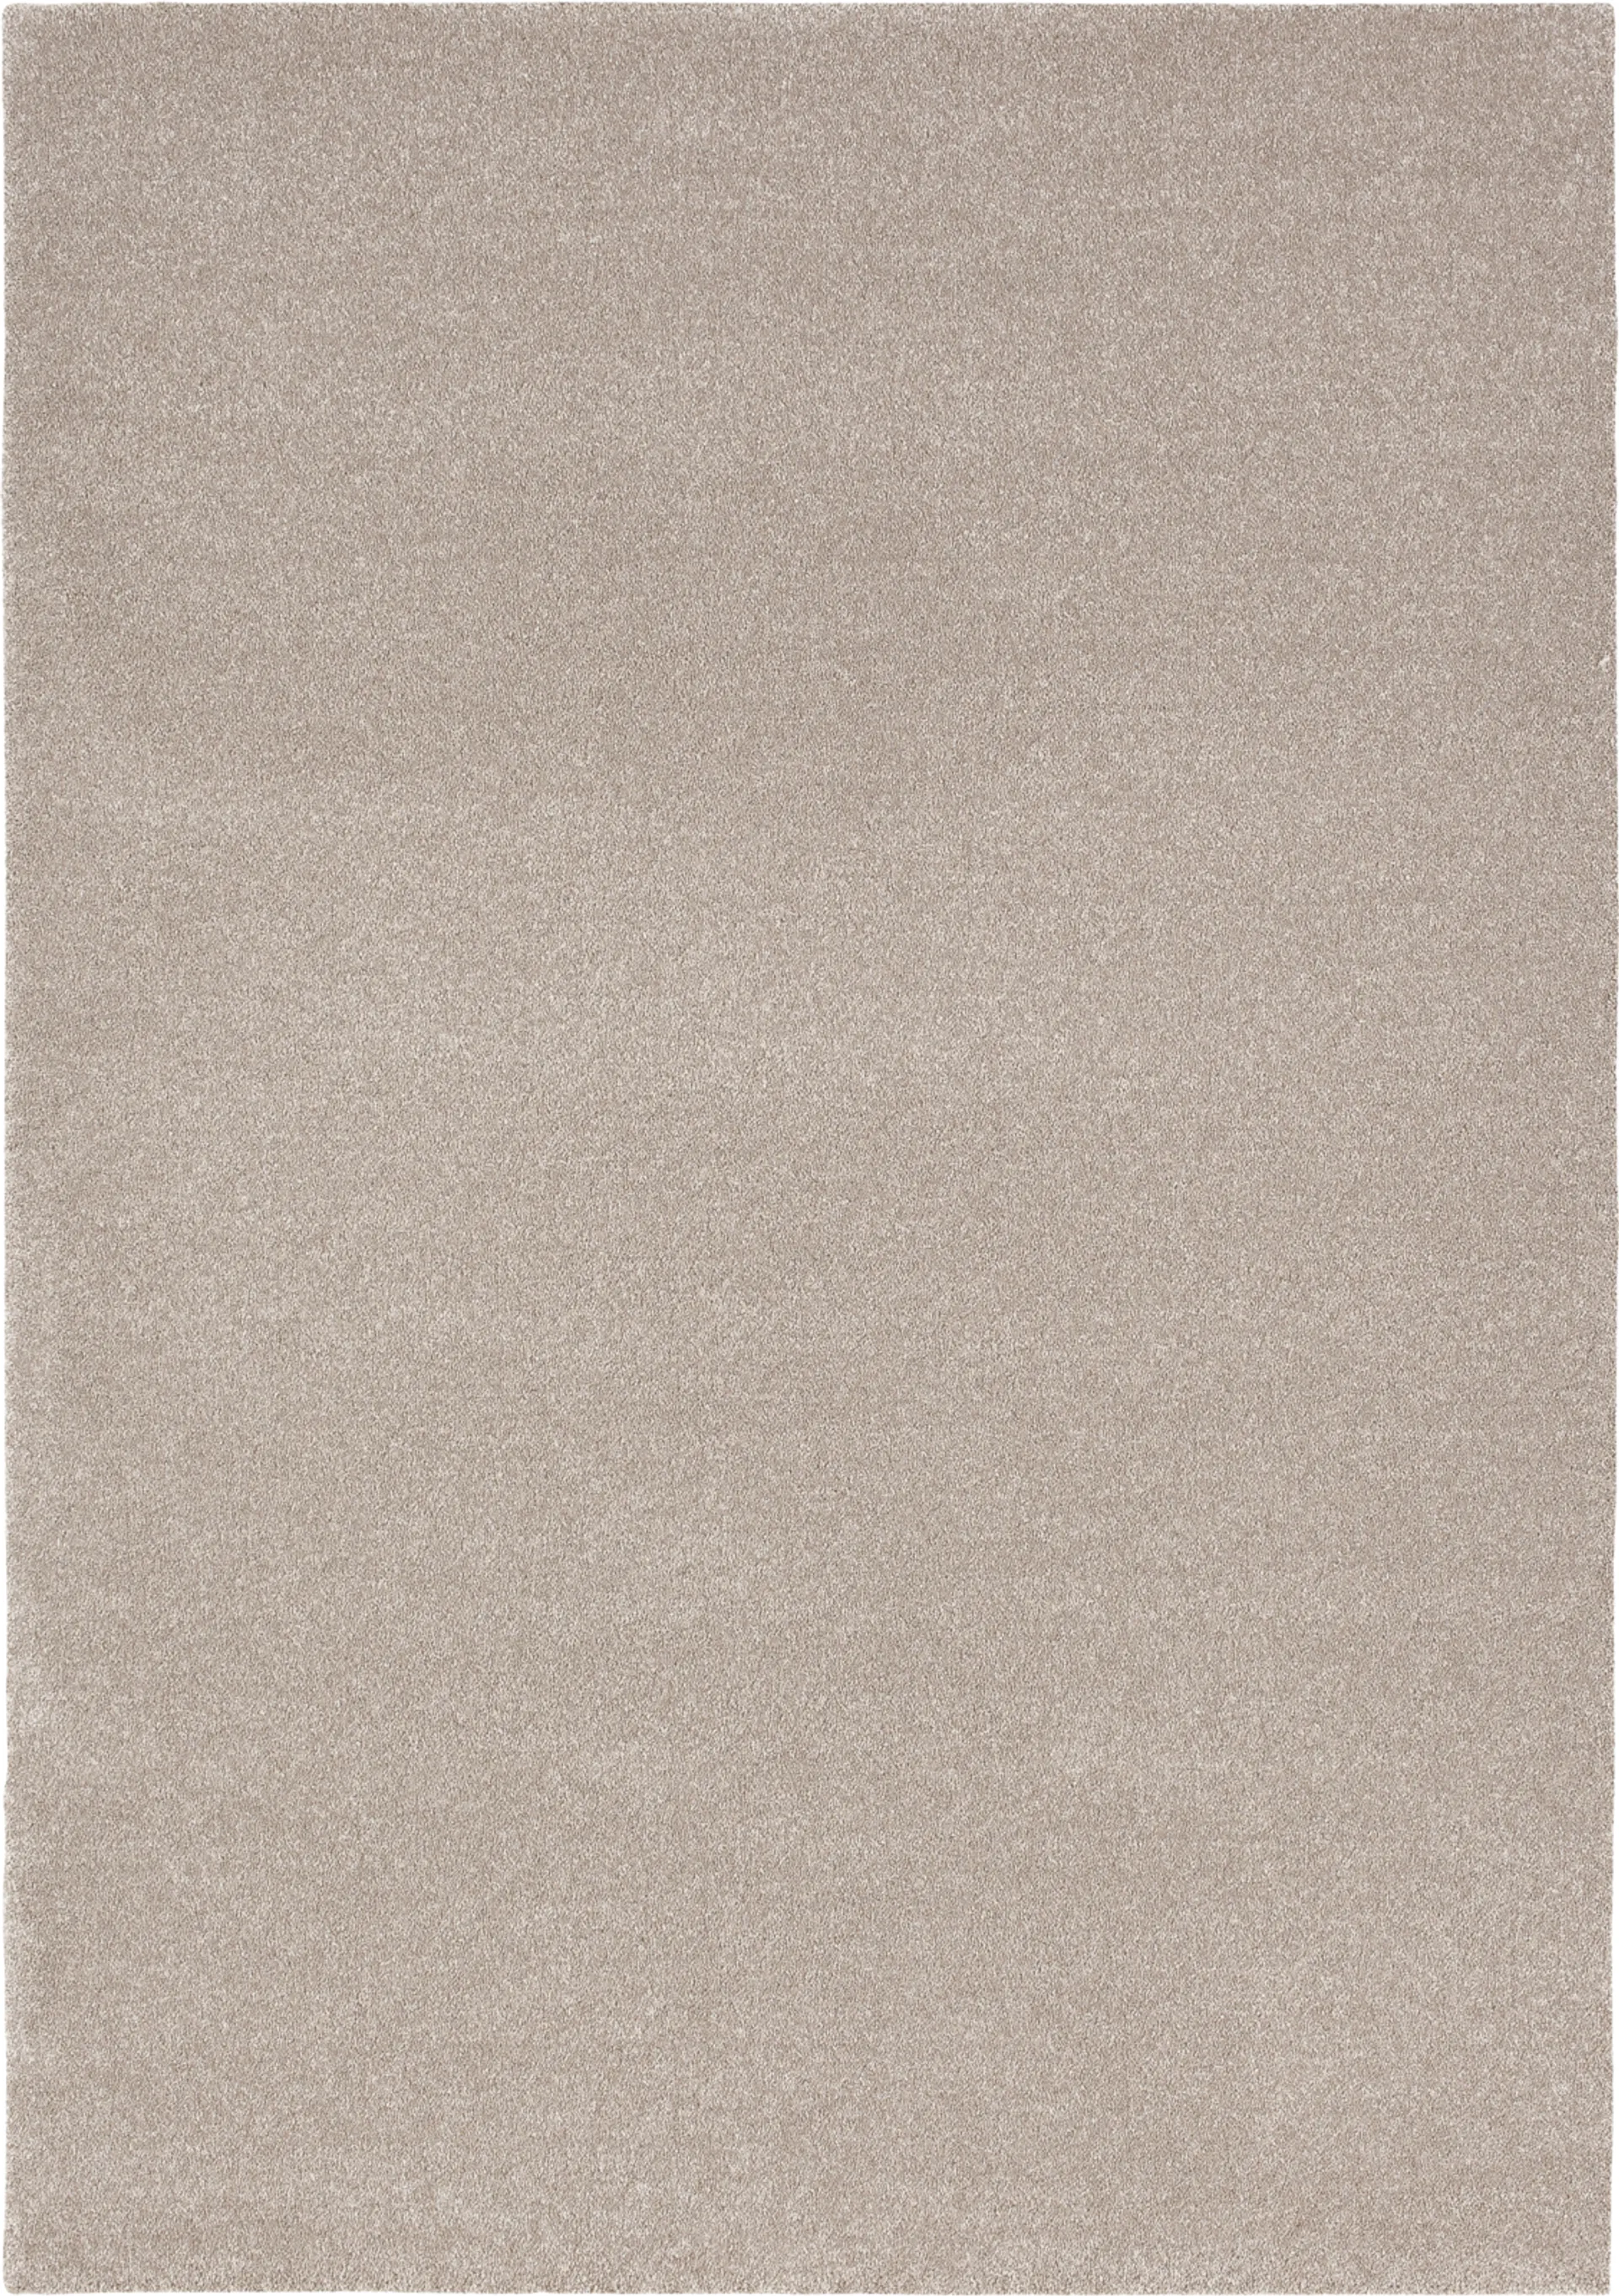 Narma velourmatto Wow 133x200 cm beige - 1